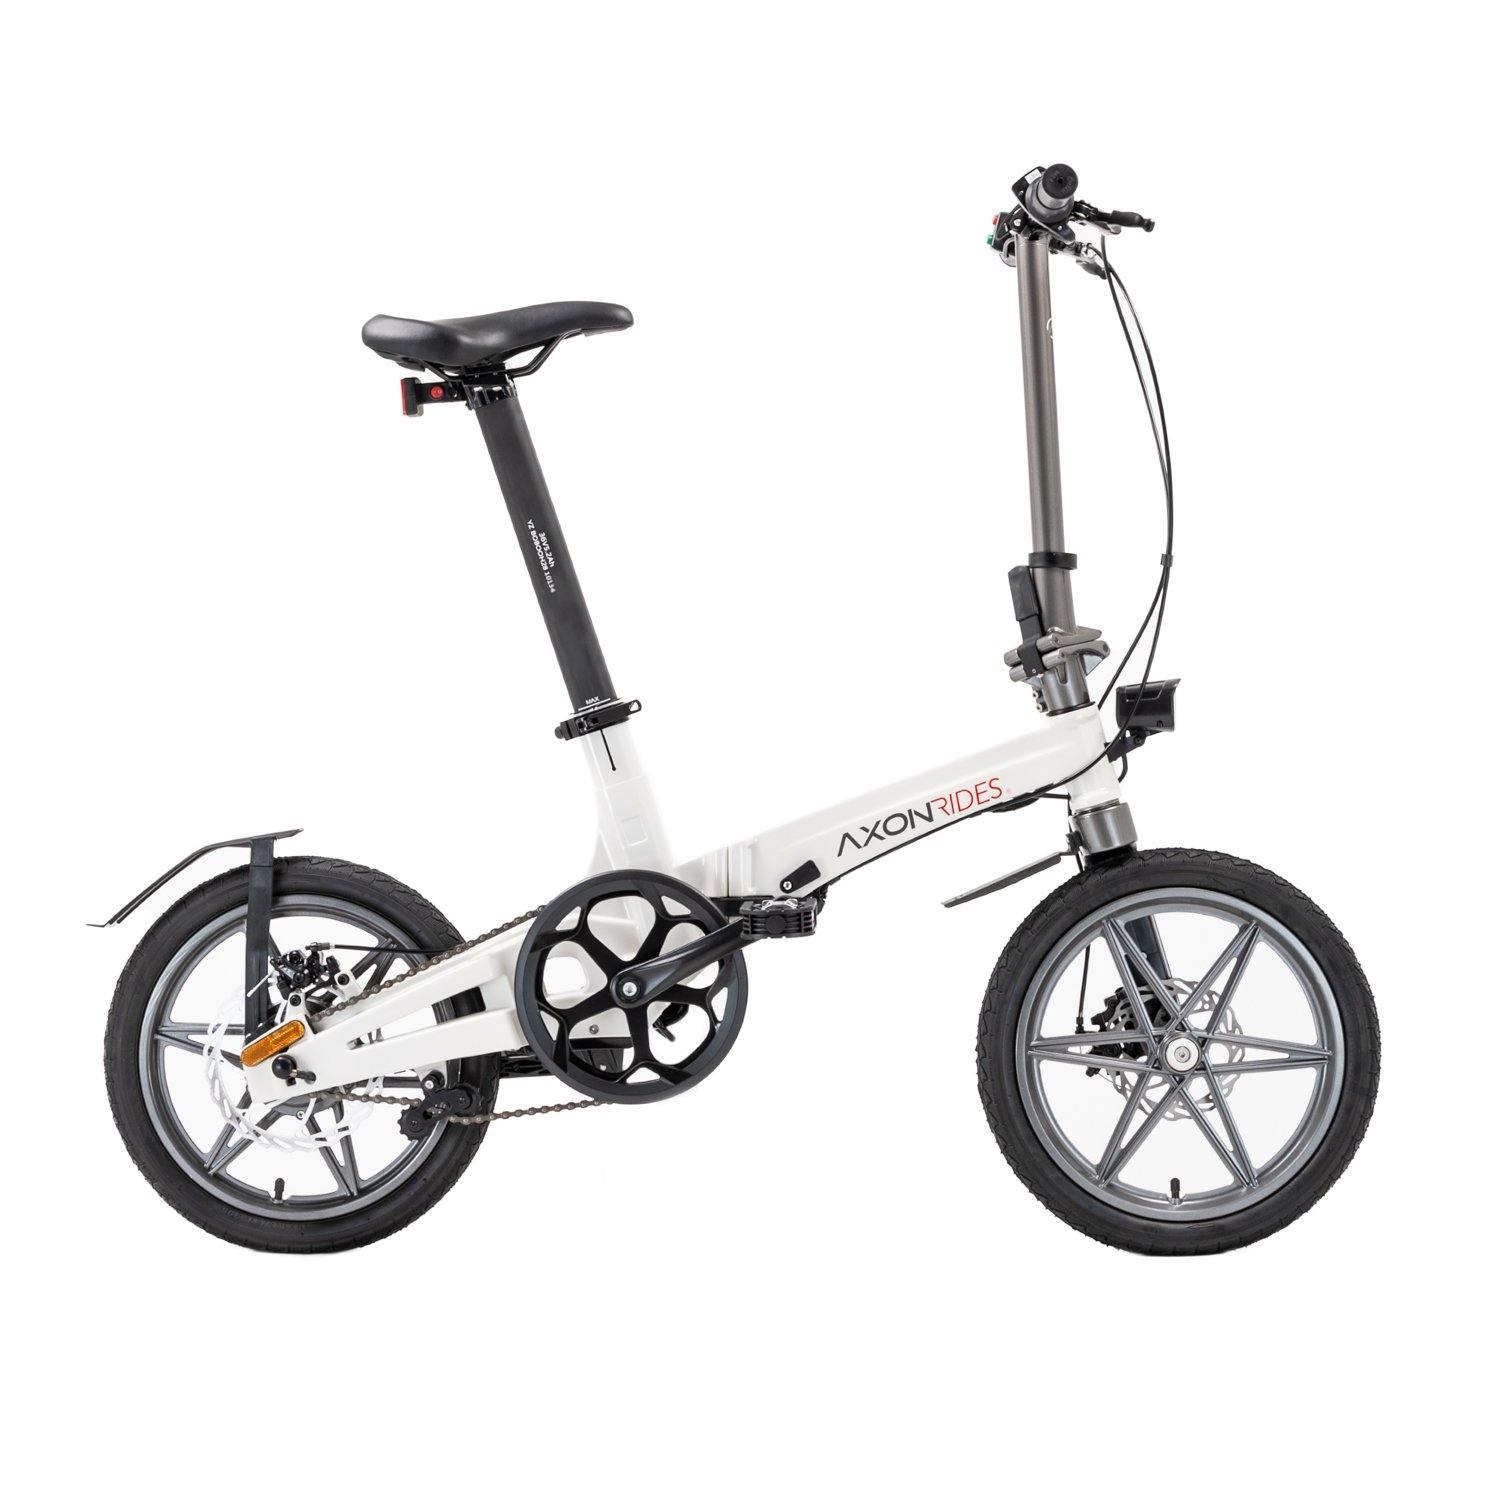 Axon Rides – Axon Pro Lite Folding Electric Bike 250w – Ivory White – Generation Electric